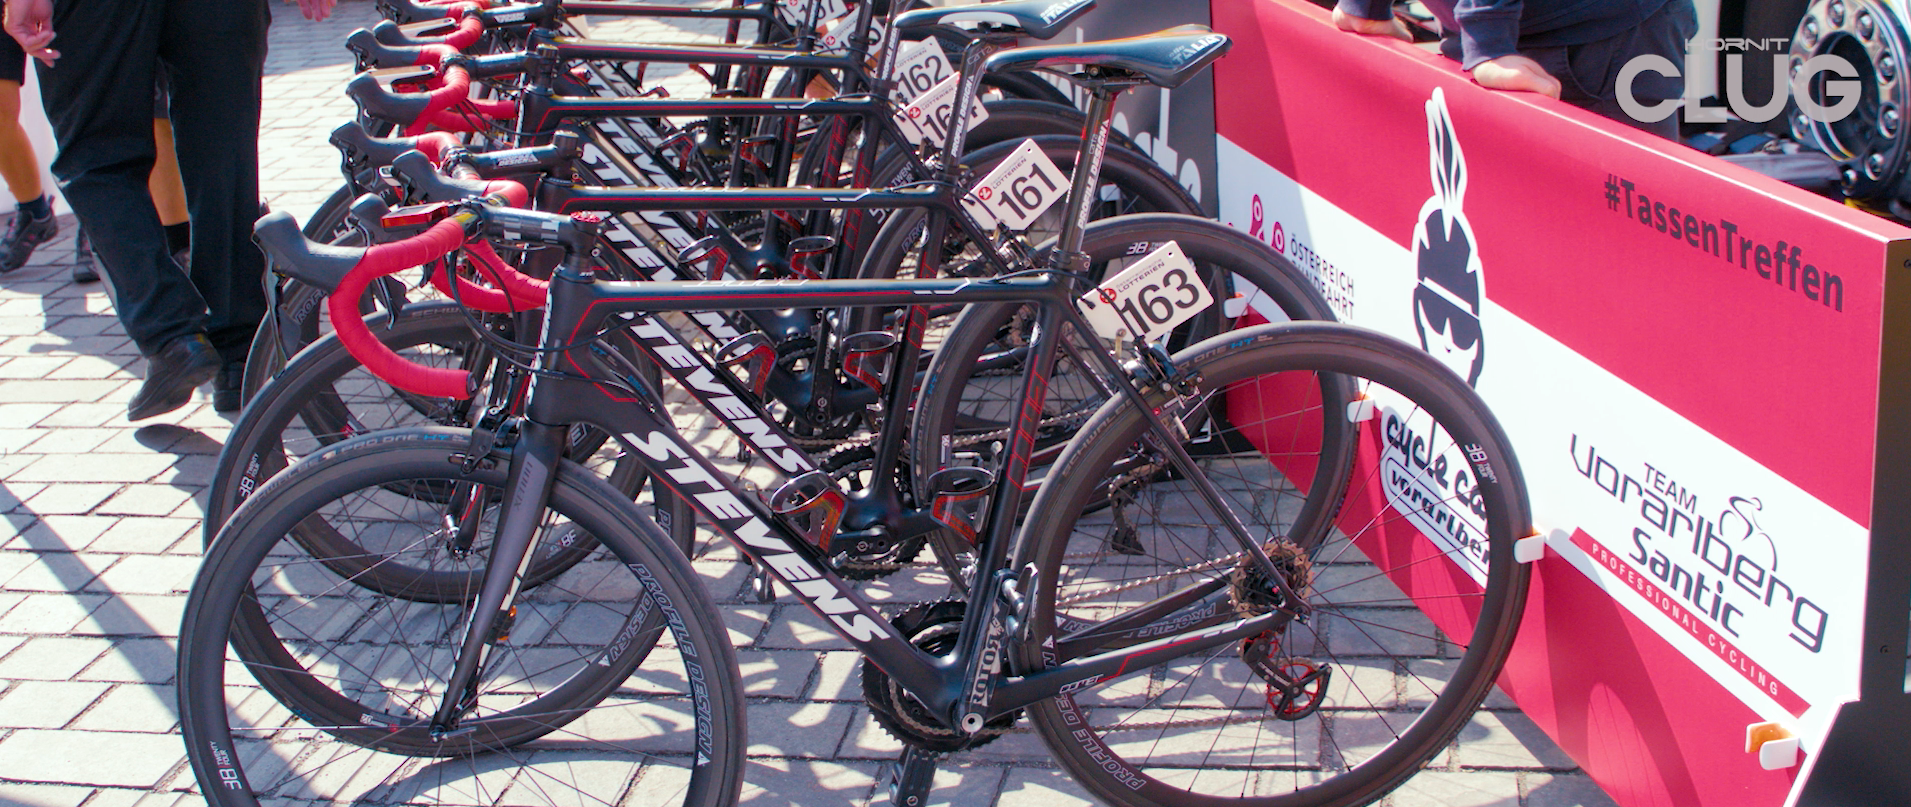 Achetez CLUG PRO ROADIE support mural vélo 1“-1,25 à sécurisation Fidlock  The Hornit maintenant